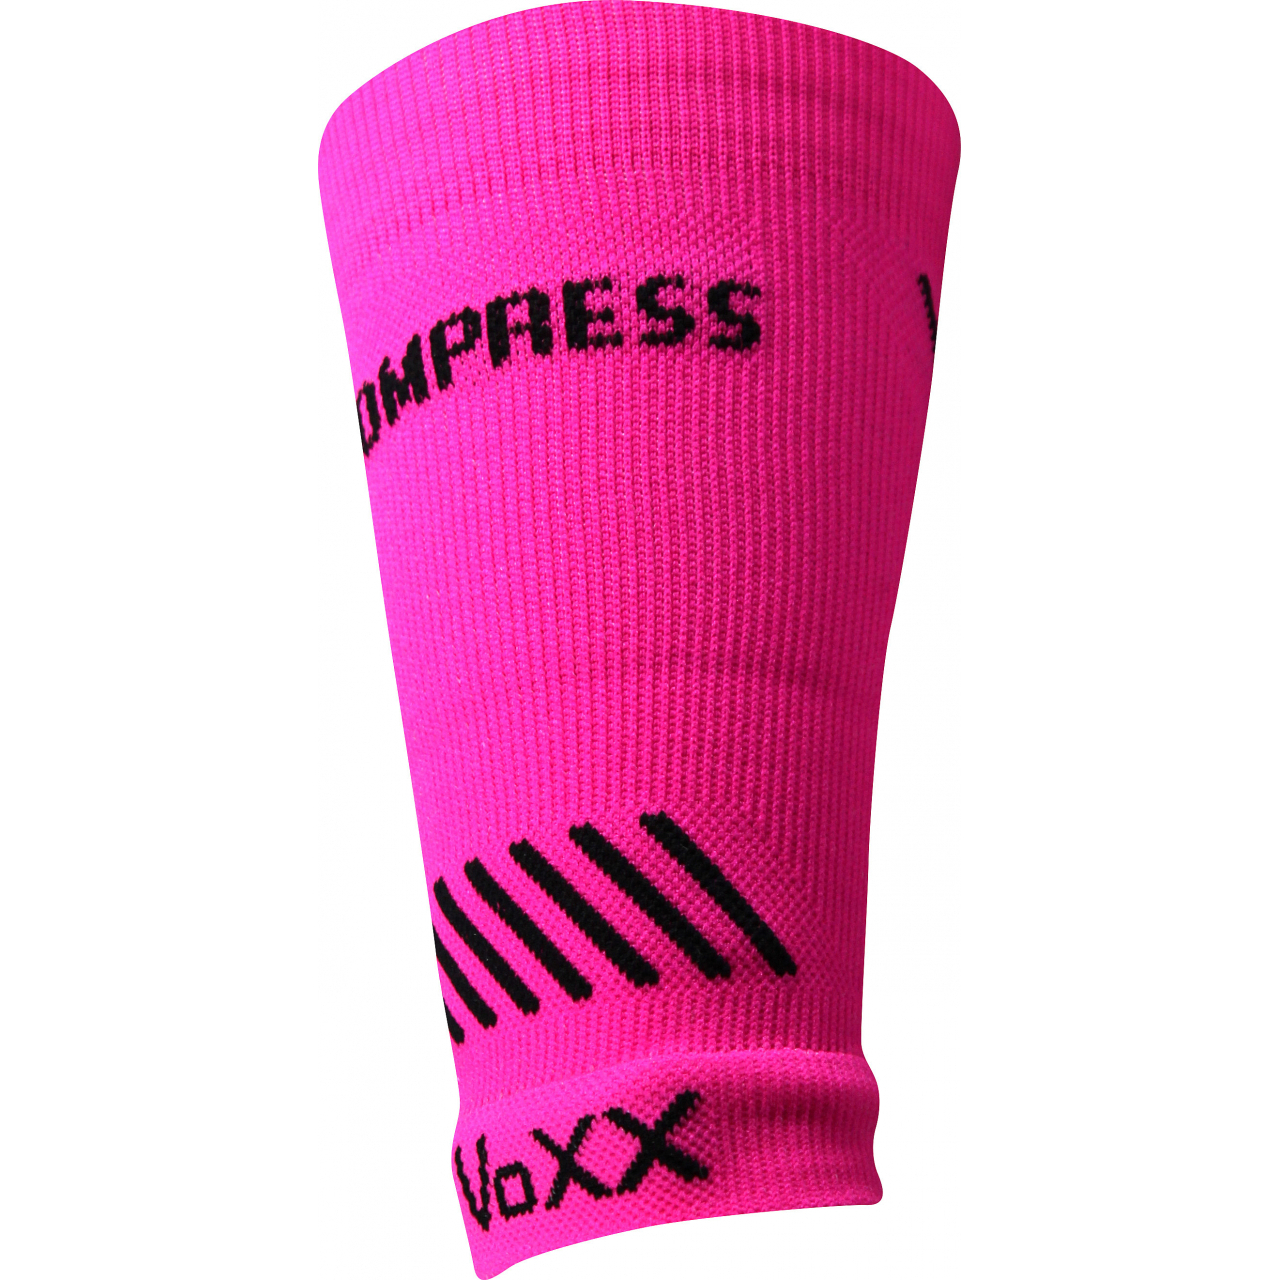 Návlek kompresní Voxx Protect zápěstí - růžový svítící, S/M